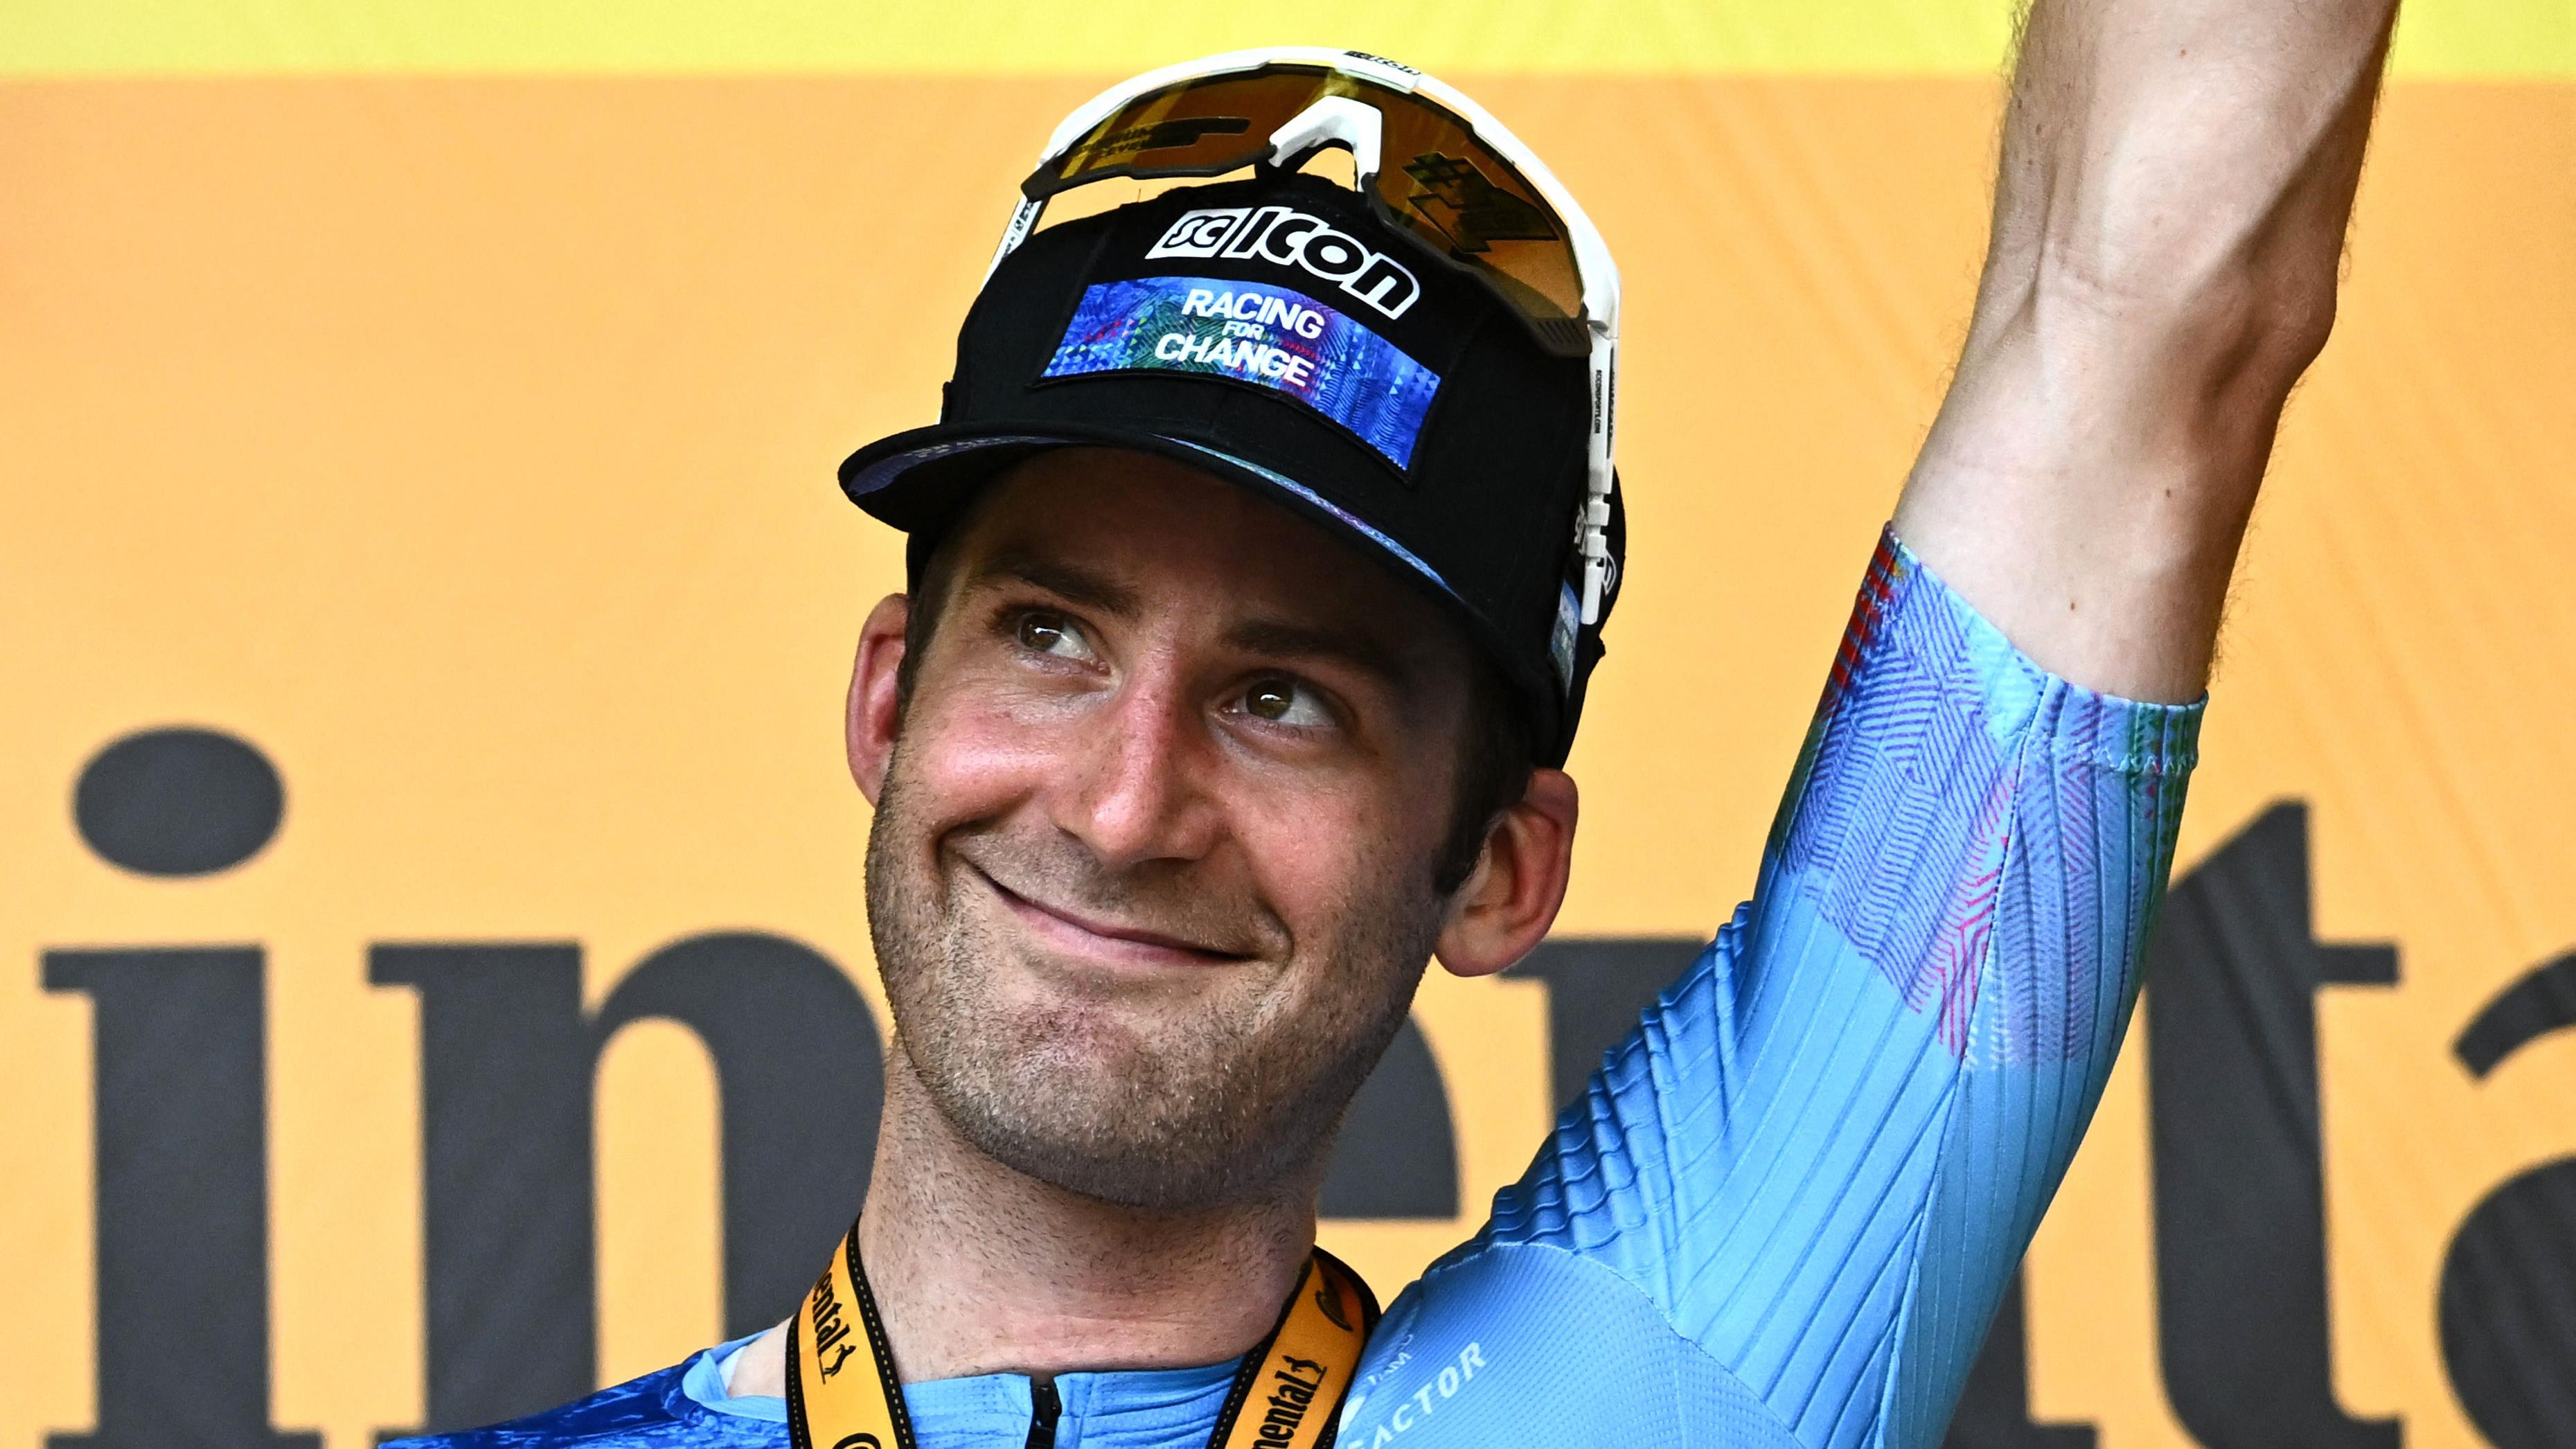 Hugo Houle qui a remporté une victoire d'étape historique au Tour de France
Hugo Houle qui a remporté une victoire d'étape historique au Tour de France